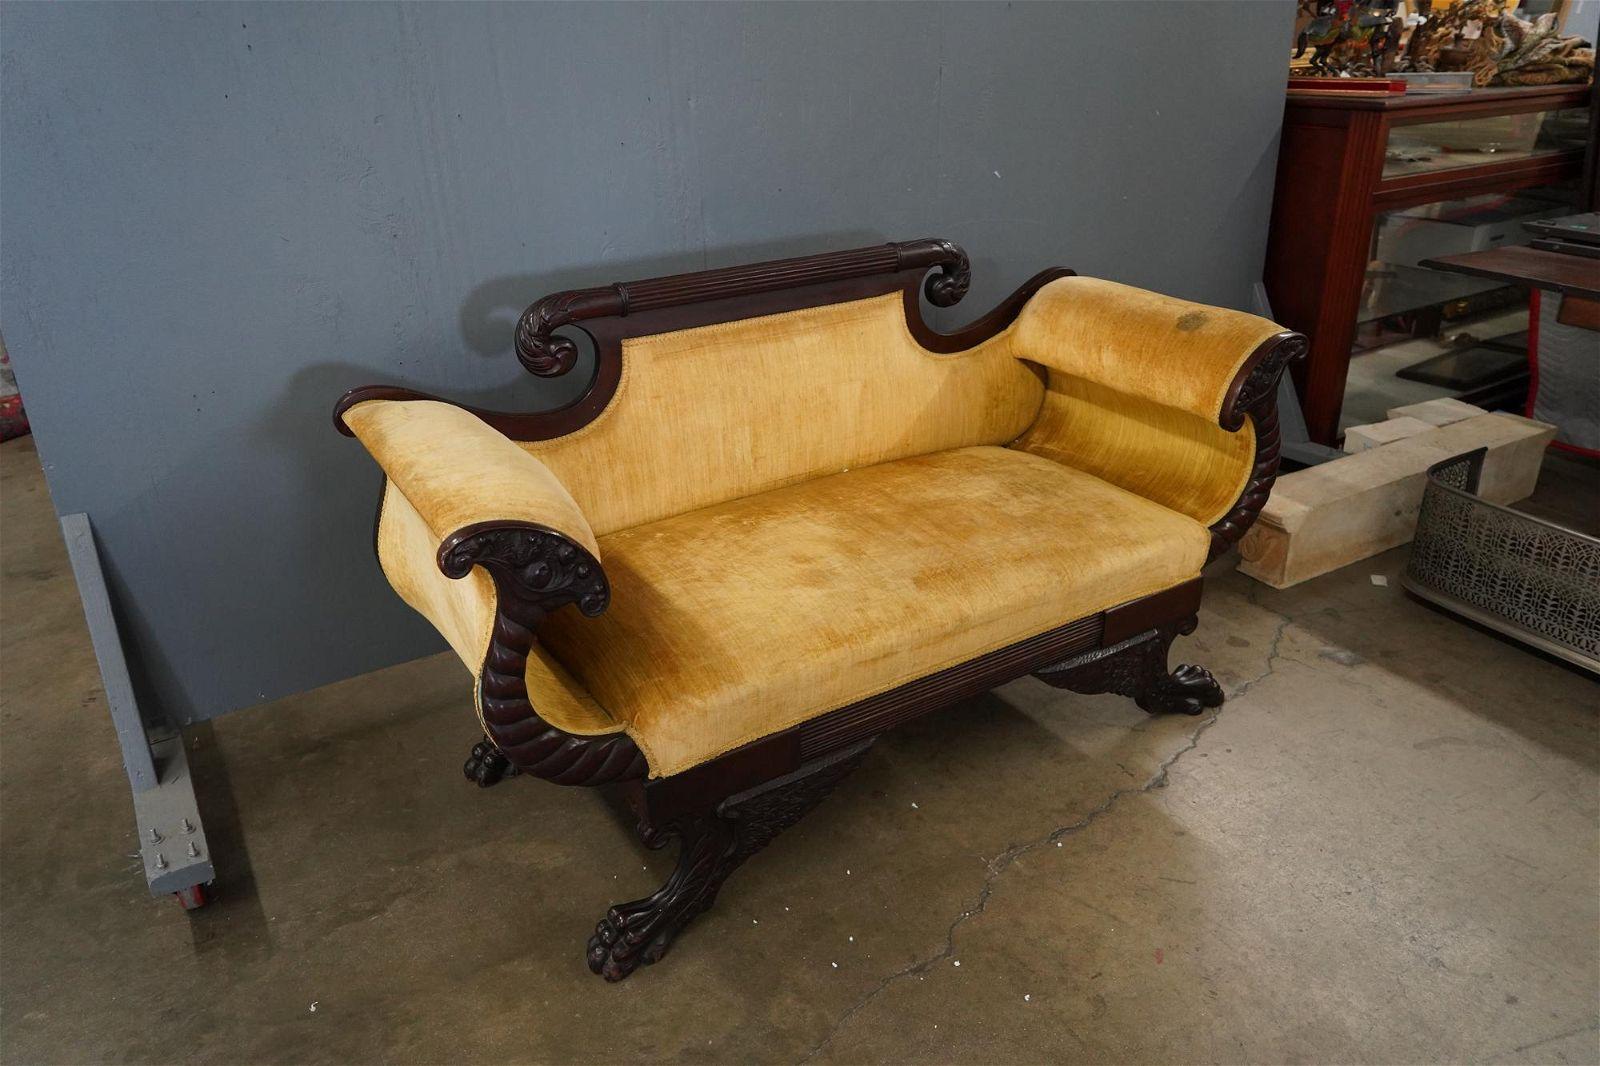 CIRCA 1800 Amerikanisches Federal-Sofa aus geschnitztem Mahagoni mit geschnitztem Kopfteil, geschwungenen Armlehnen und nach außen gebogenen Füßen, gepolstert mit altem, gestreiftem Samtstoff